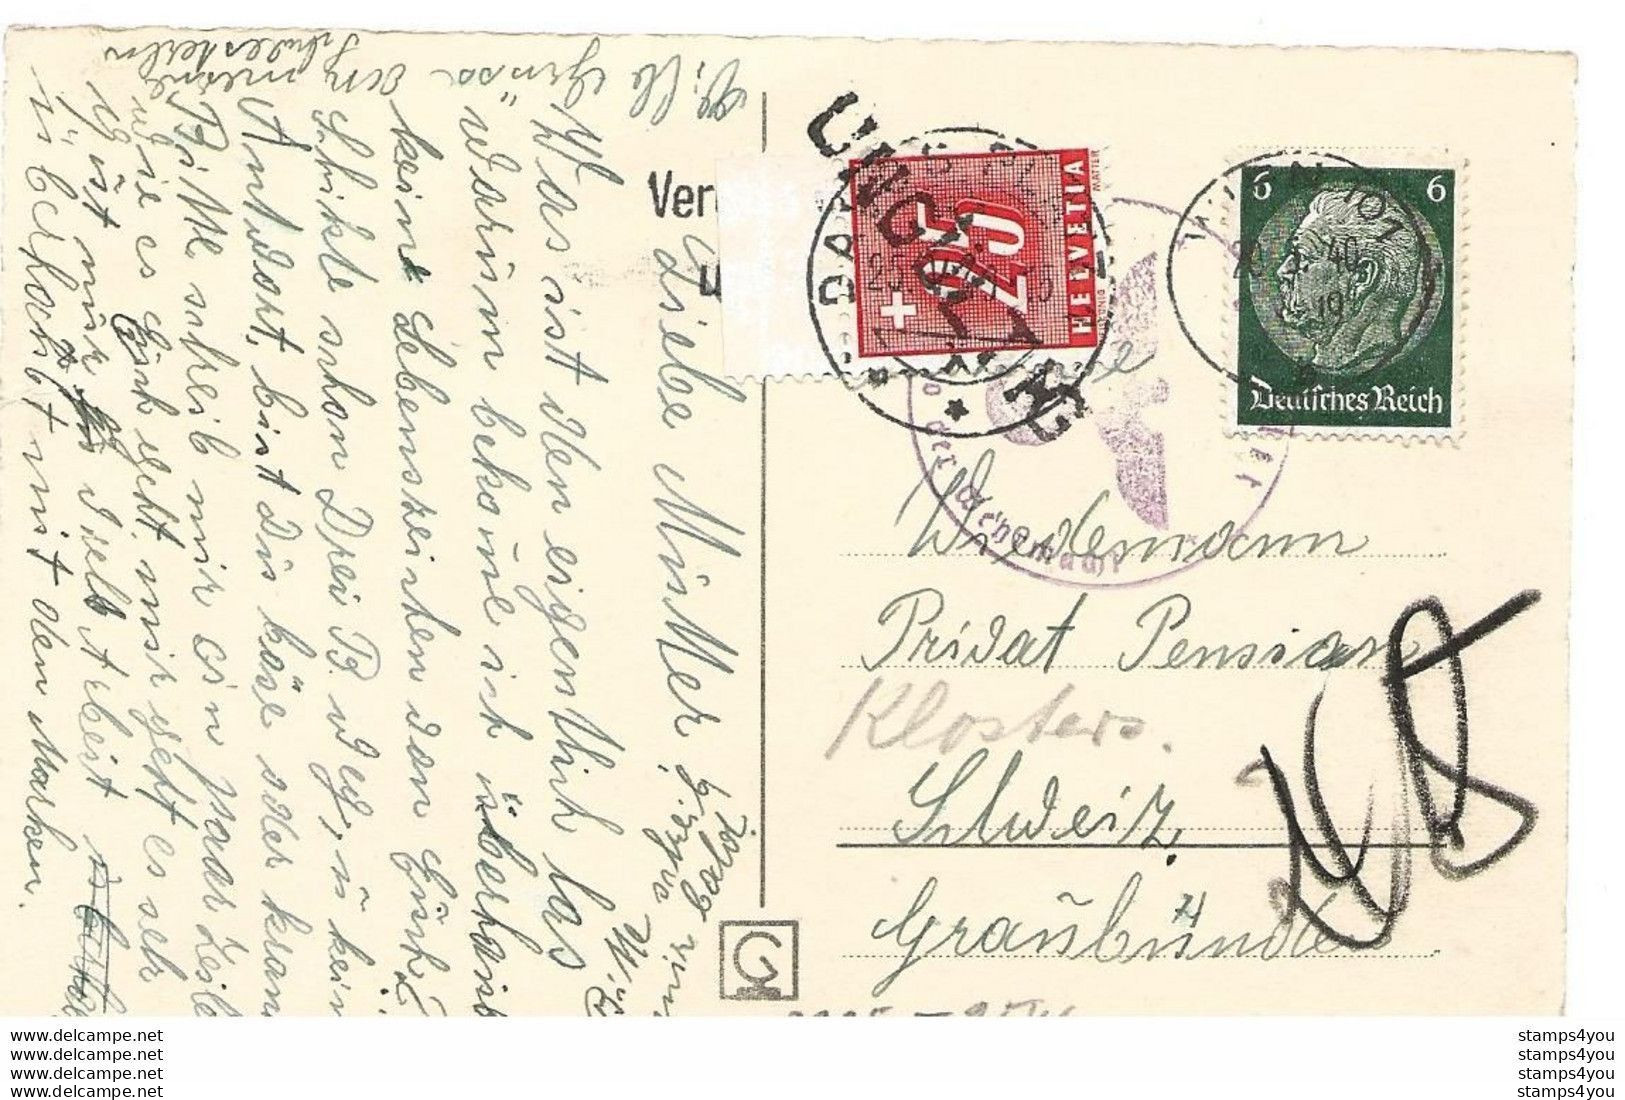 104 - 78 - Carte Envoyée De Vienne En Suisse 1940 - Timbre Suisse Taxe - Cachet Censure - WW2